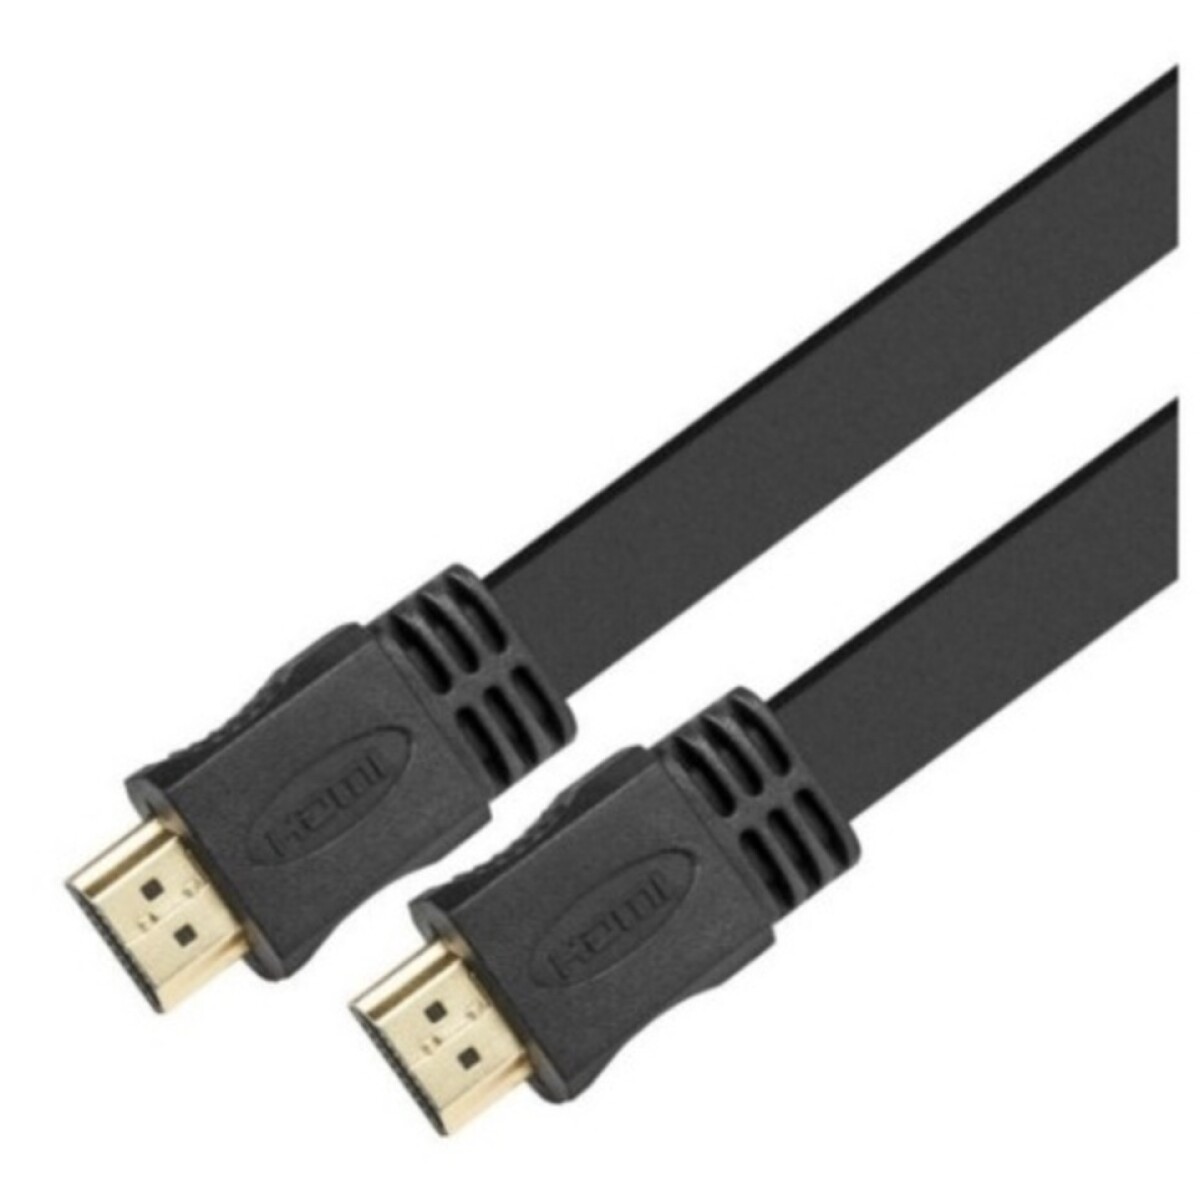 CABLE HDMI PLANO XTC 415 4.5MTS XTECH - Negro 